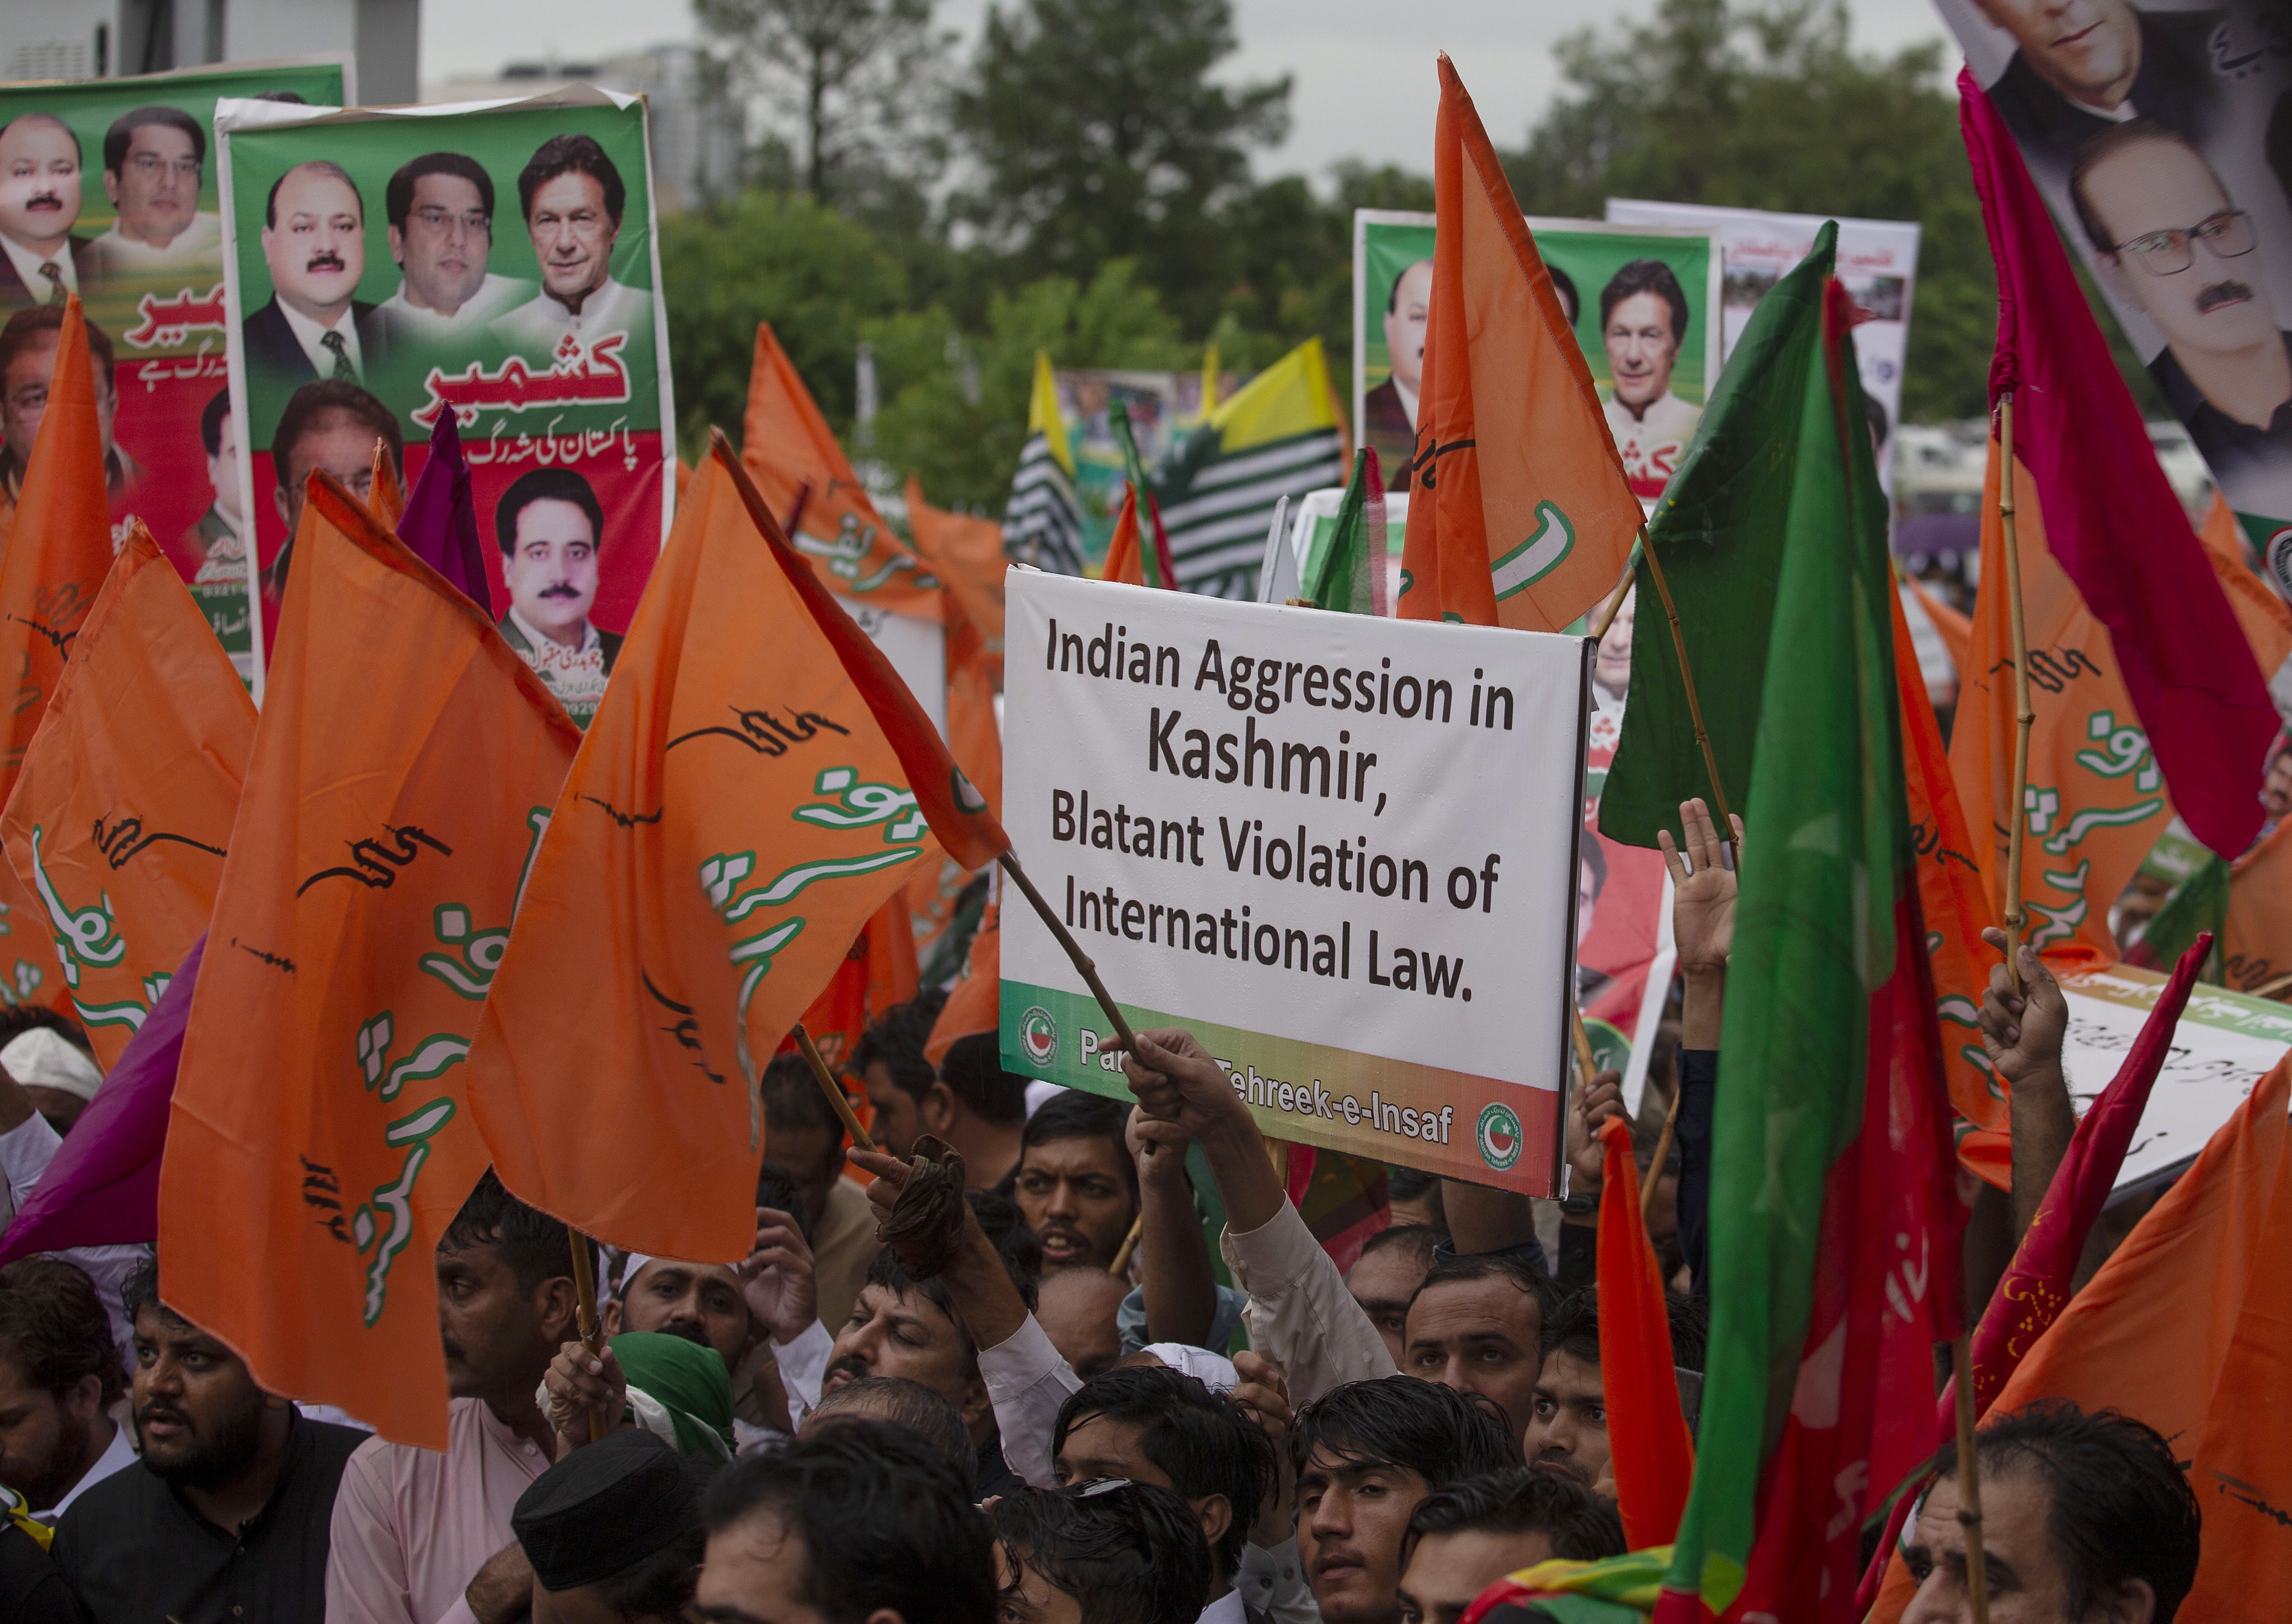 Des partisans du premier ministre du Pakistan, Imran Khan, qui protestent contre les agissements de l'Inde au Cachemire